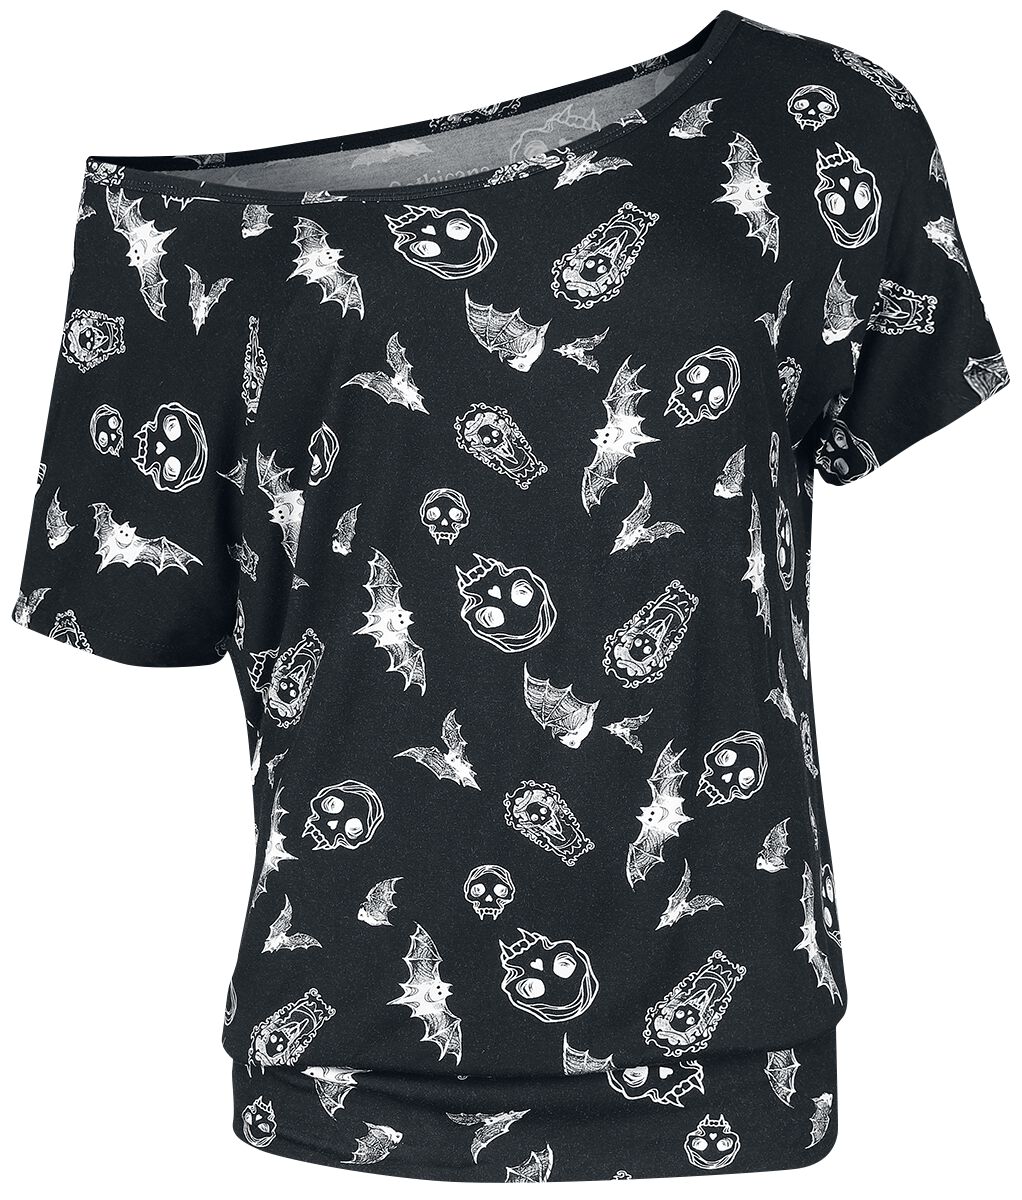 T-Shirt Manches courtes Gothic de Gothicana by EMP - T-Shirt mit Fledermaus und Totenkopf Print - S 